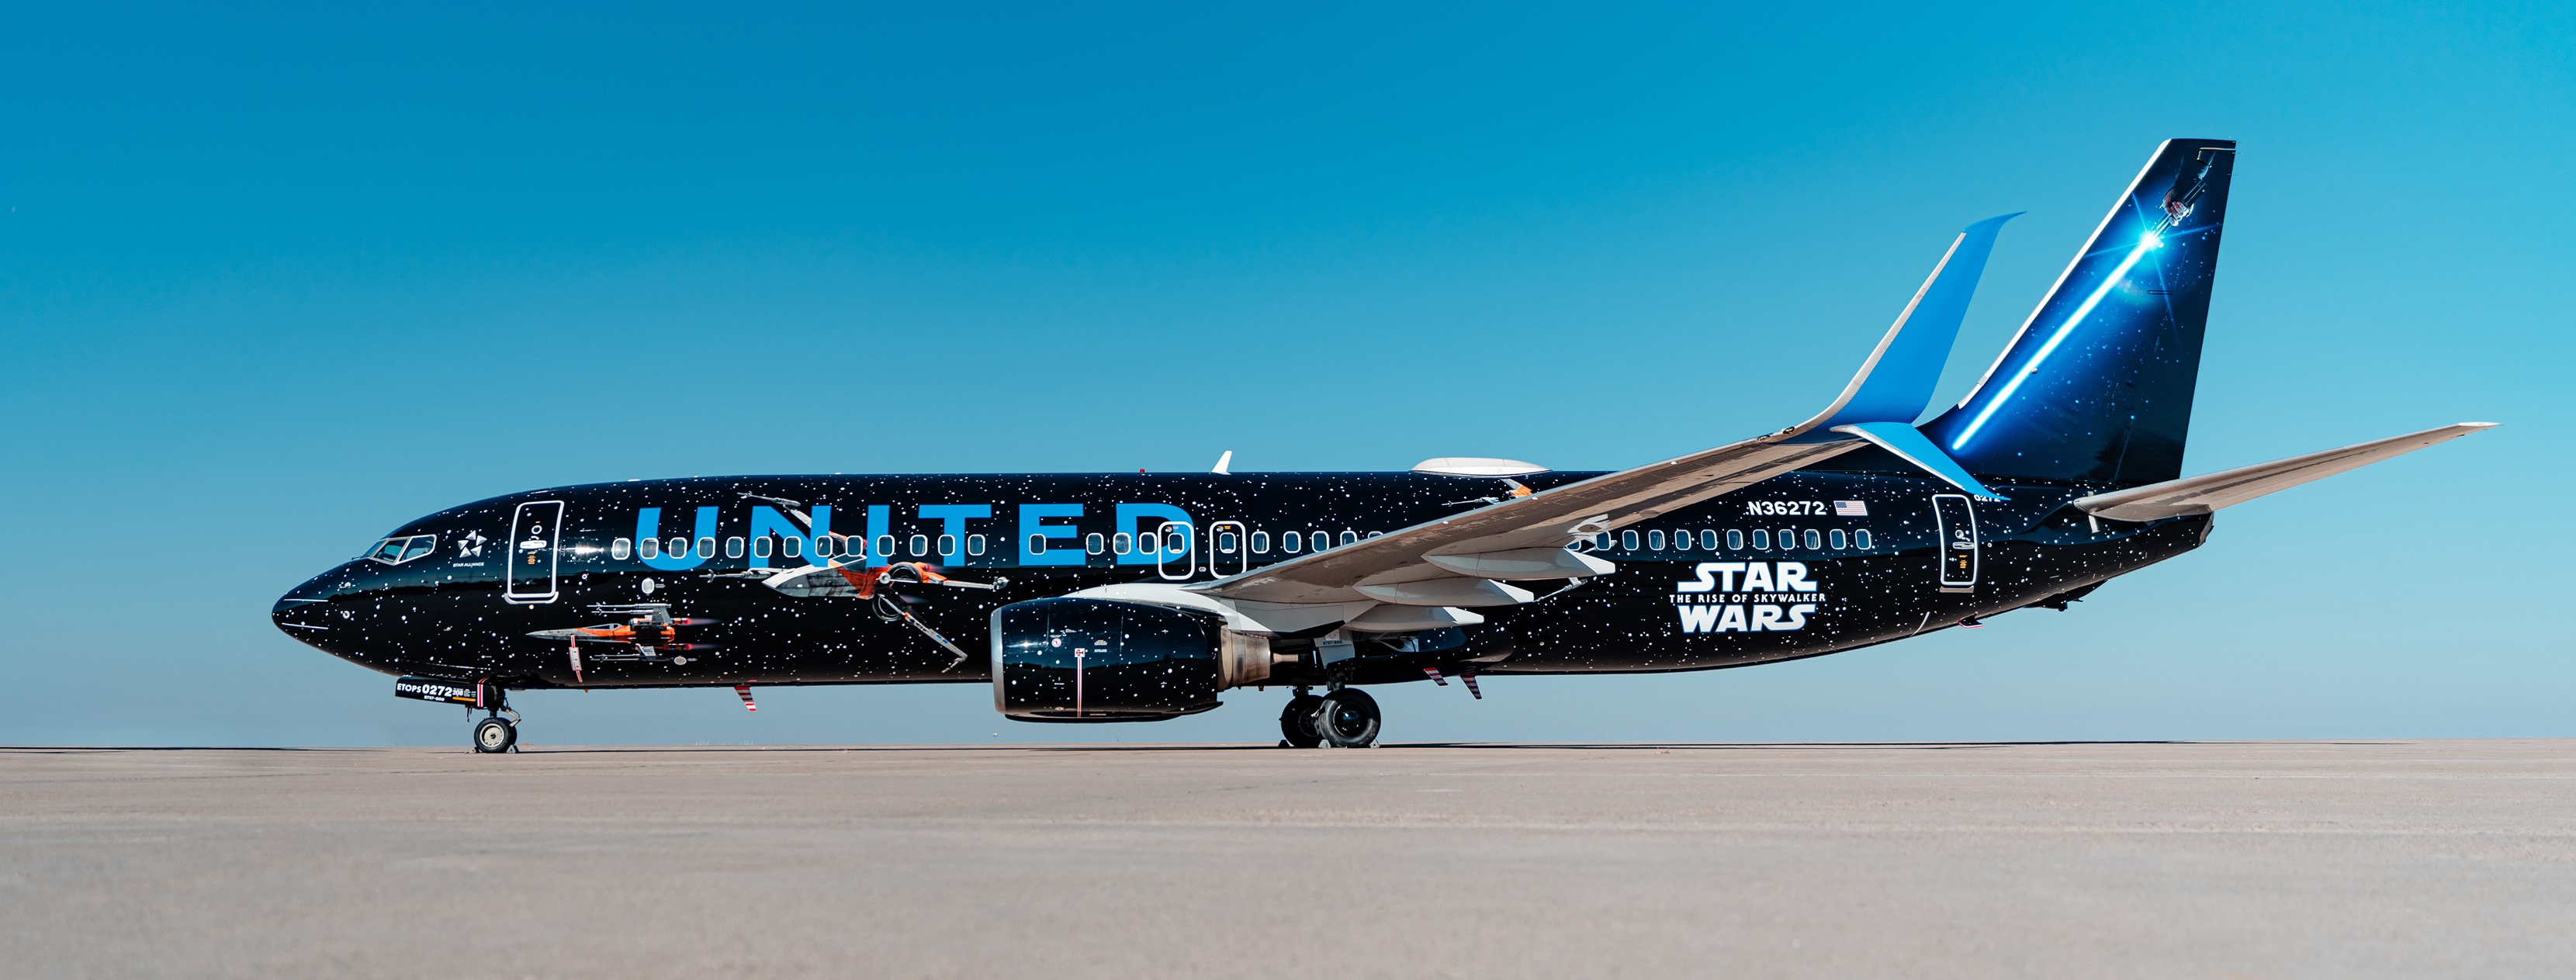 United Airlines покрасила Boeing в стиле "Звездных войн": видео